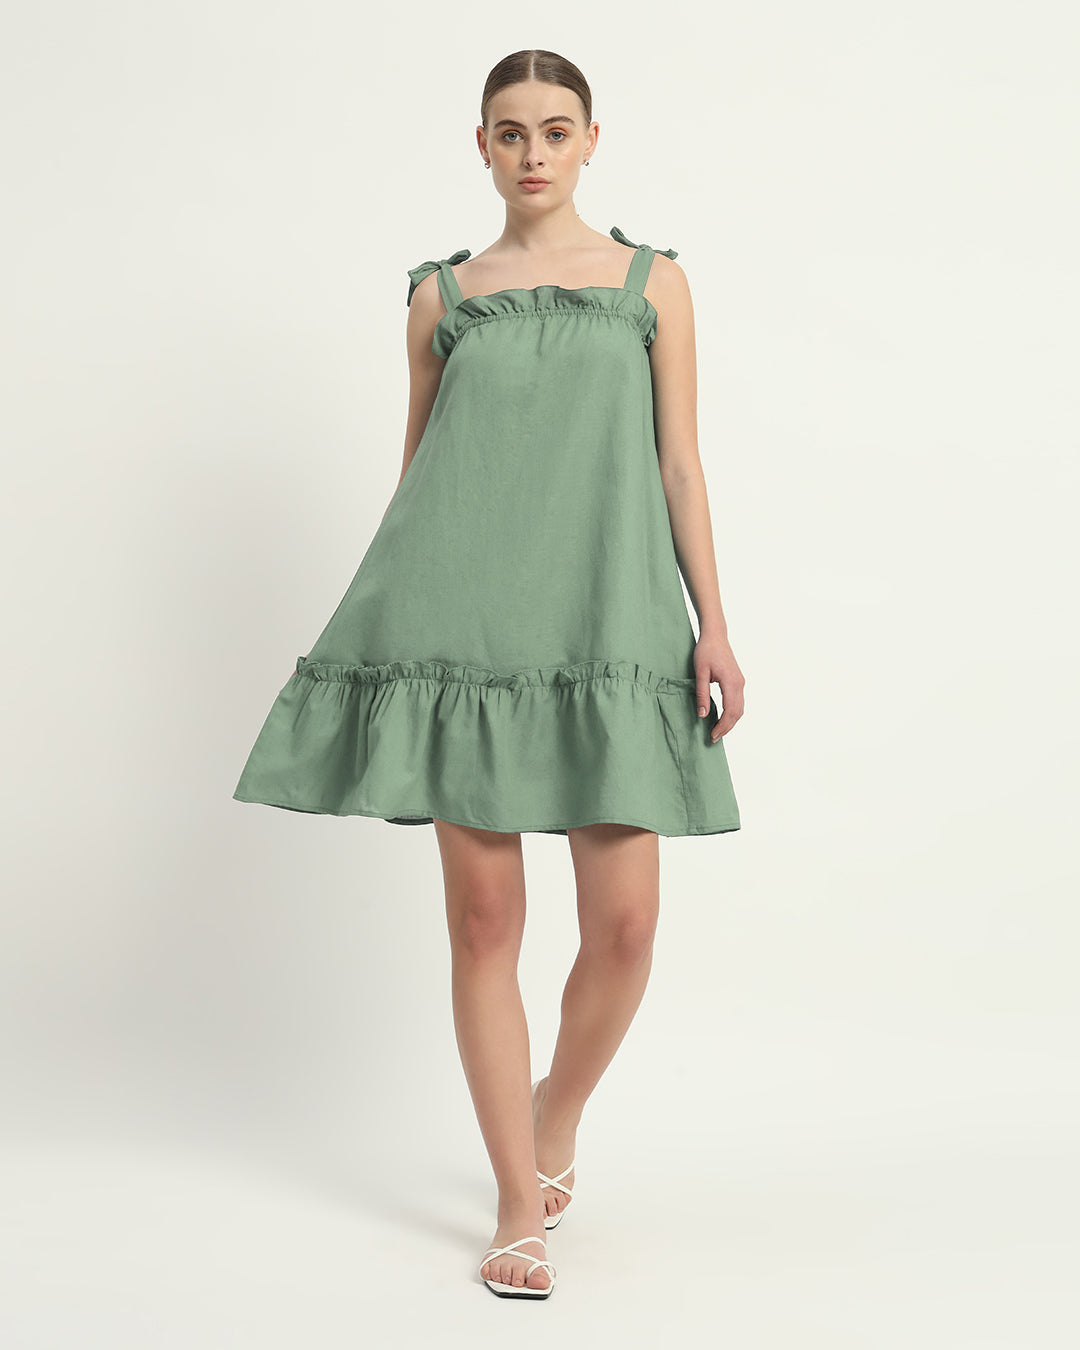 The Mint Amalfi Cotton Dress